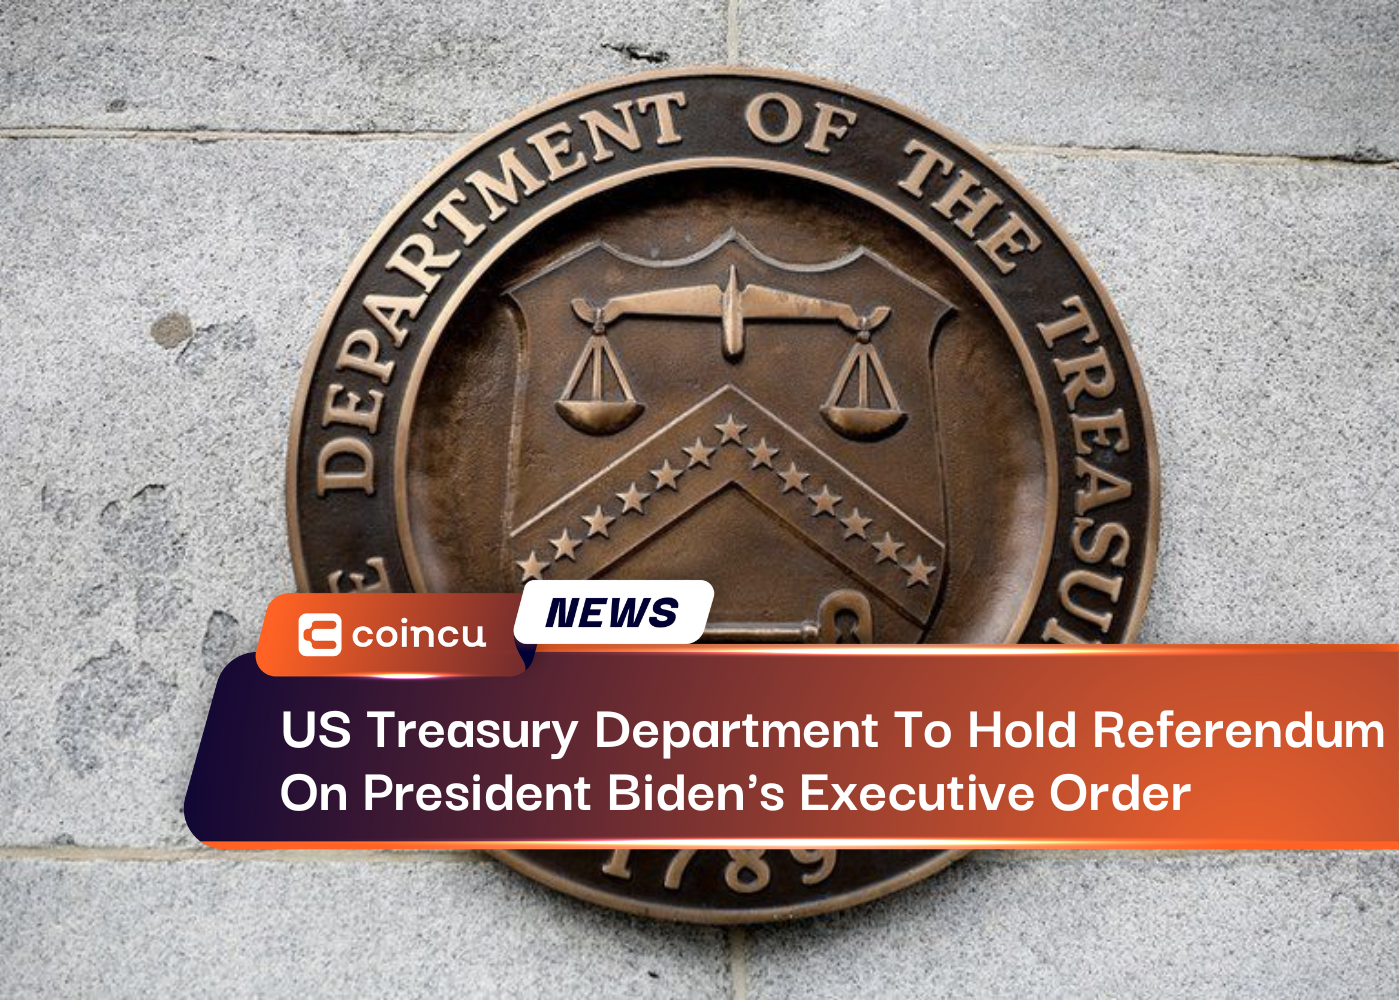 Das US-Finanzministerium wird ein Referendum über die Executive Order von Präsident Biden abhalten